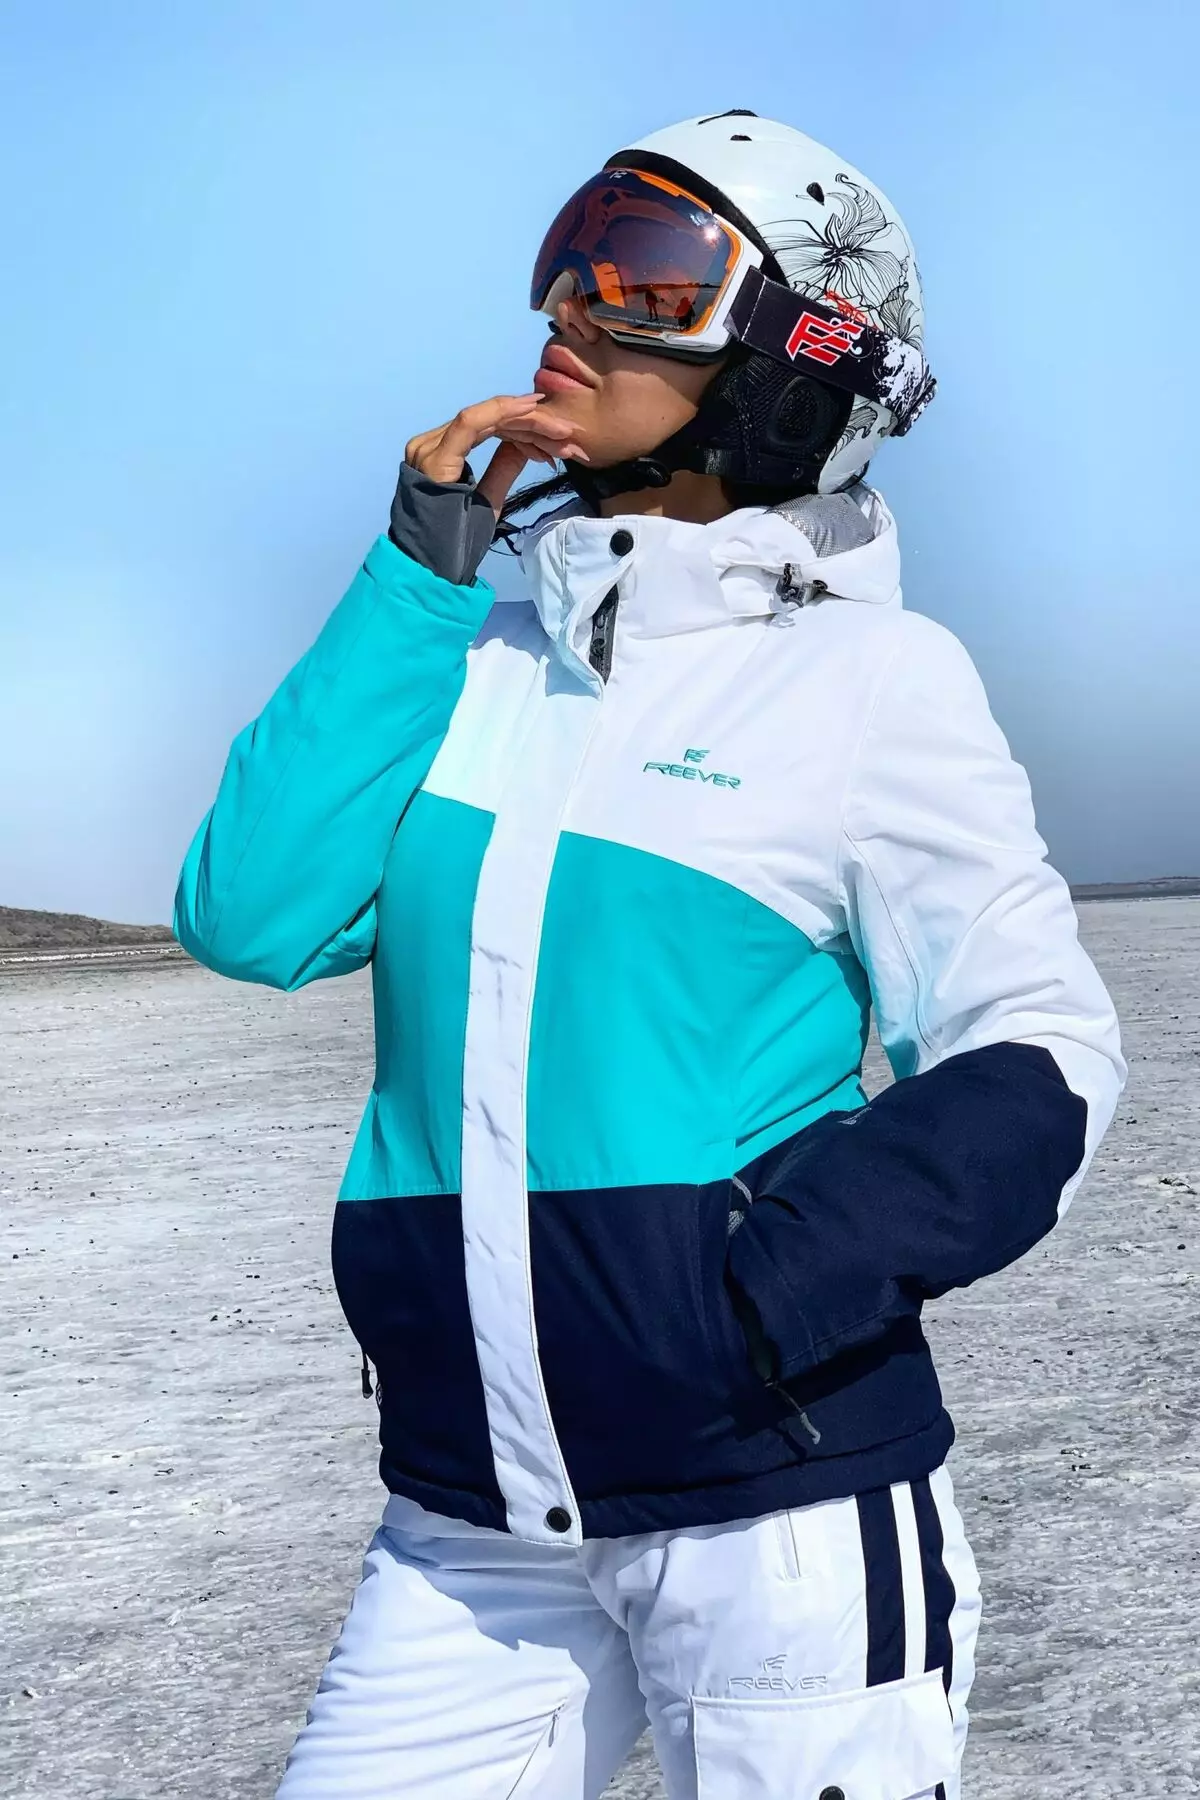 스키 재킷 : 크로스 컨트리 스키 여성 겨울 자켓, 워밍업 어린이와 성인 스키 재킷. 스케이팅을 선택하는 방법은 무엇입니까? 20201_40